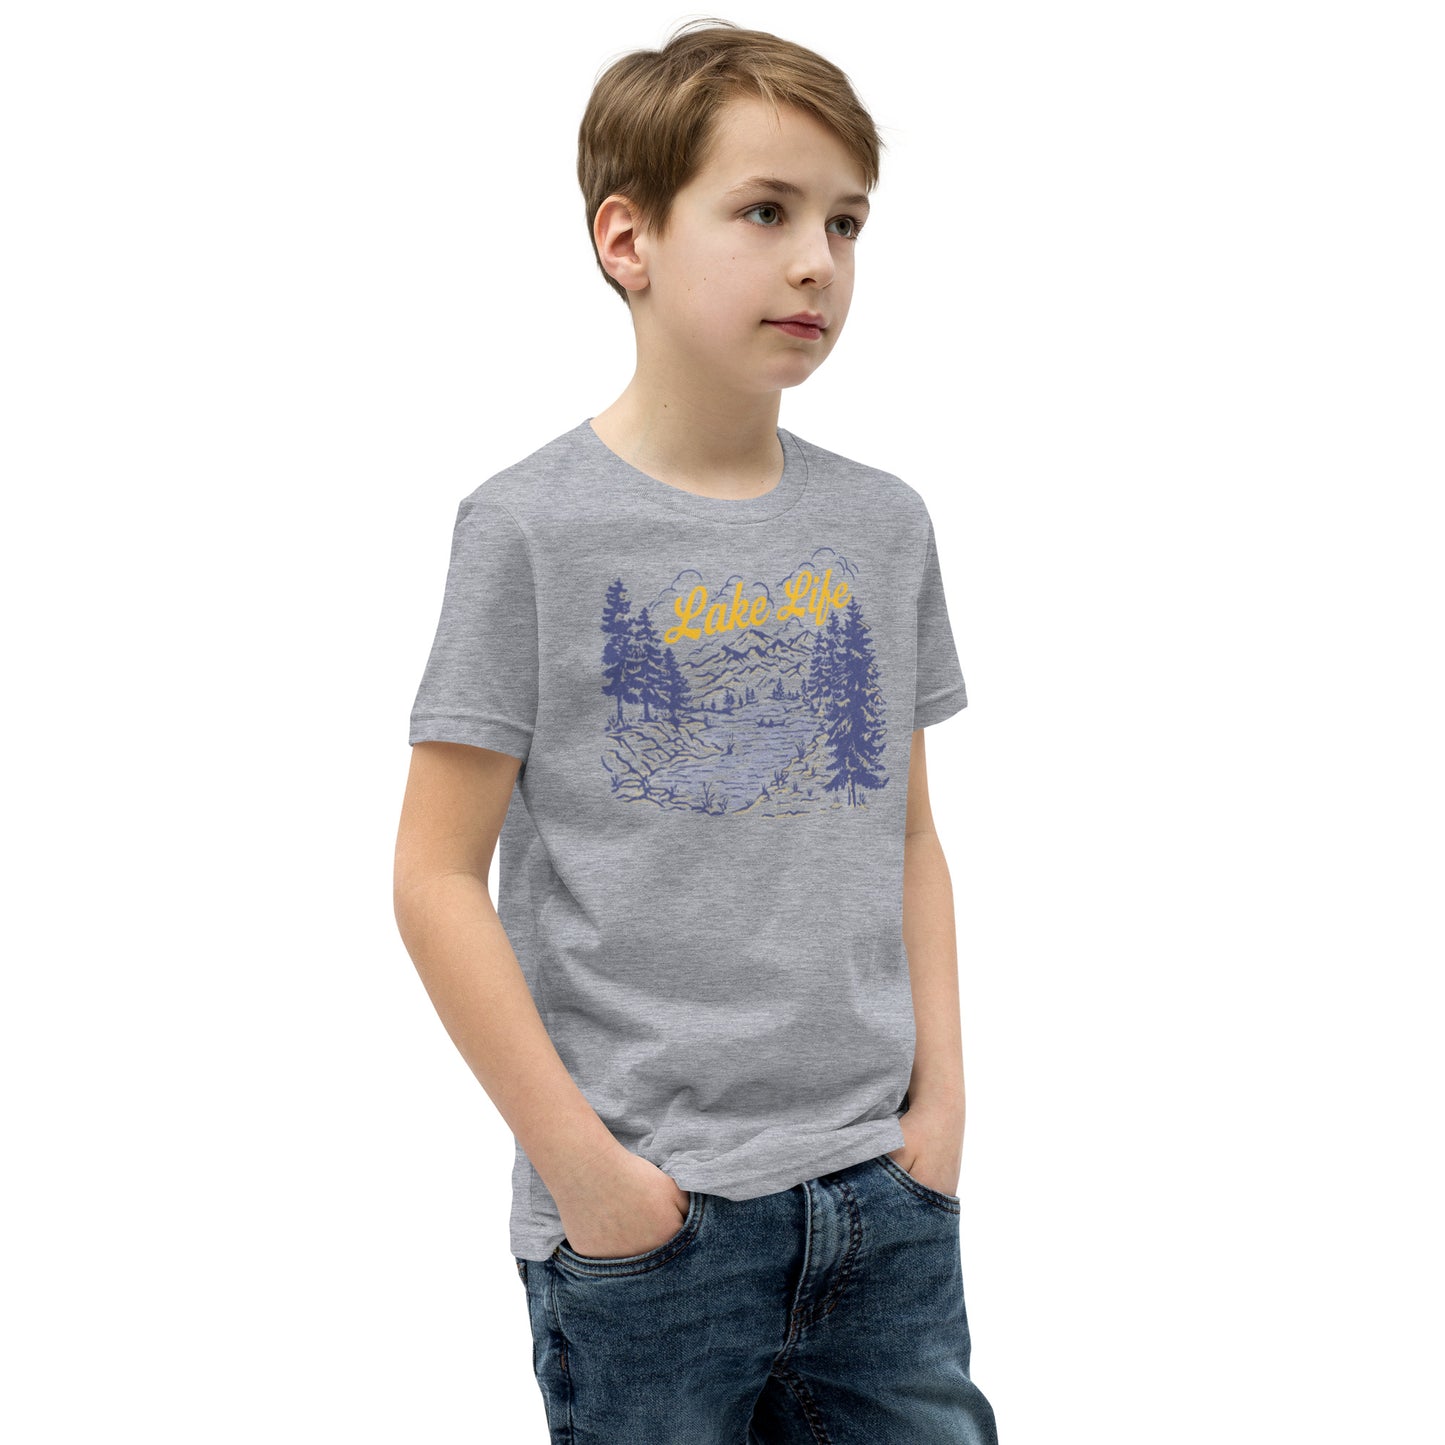 Lake Life Retro Youth Short Sleeve T-Shirt sizes S-XL